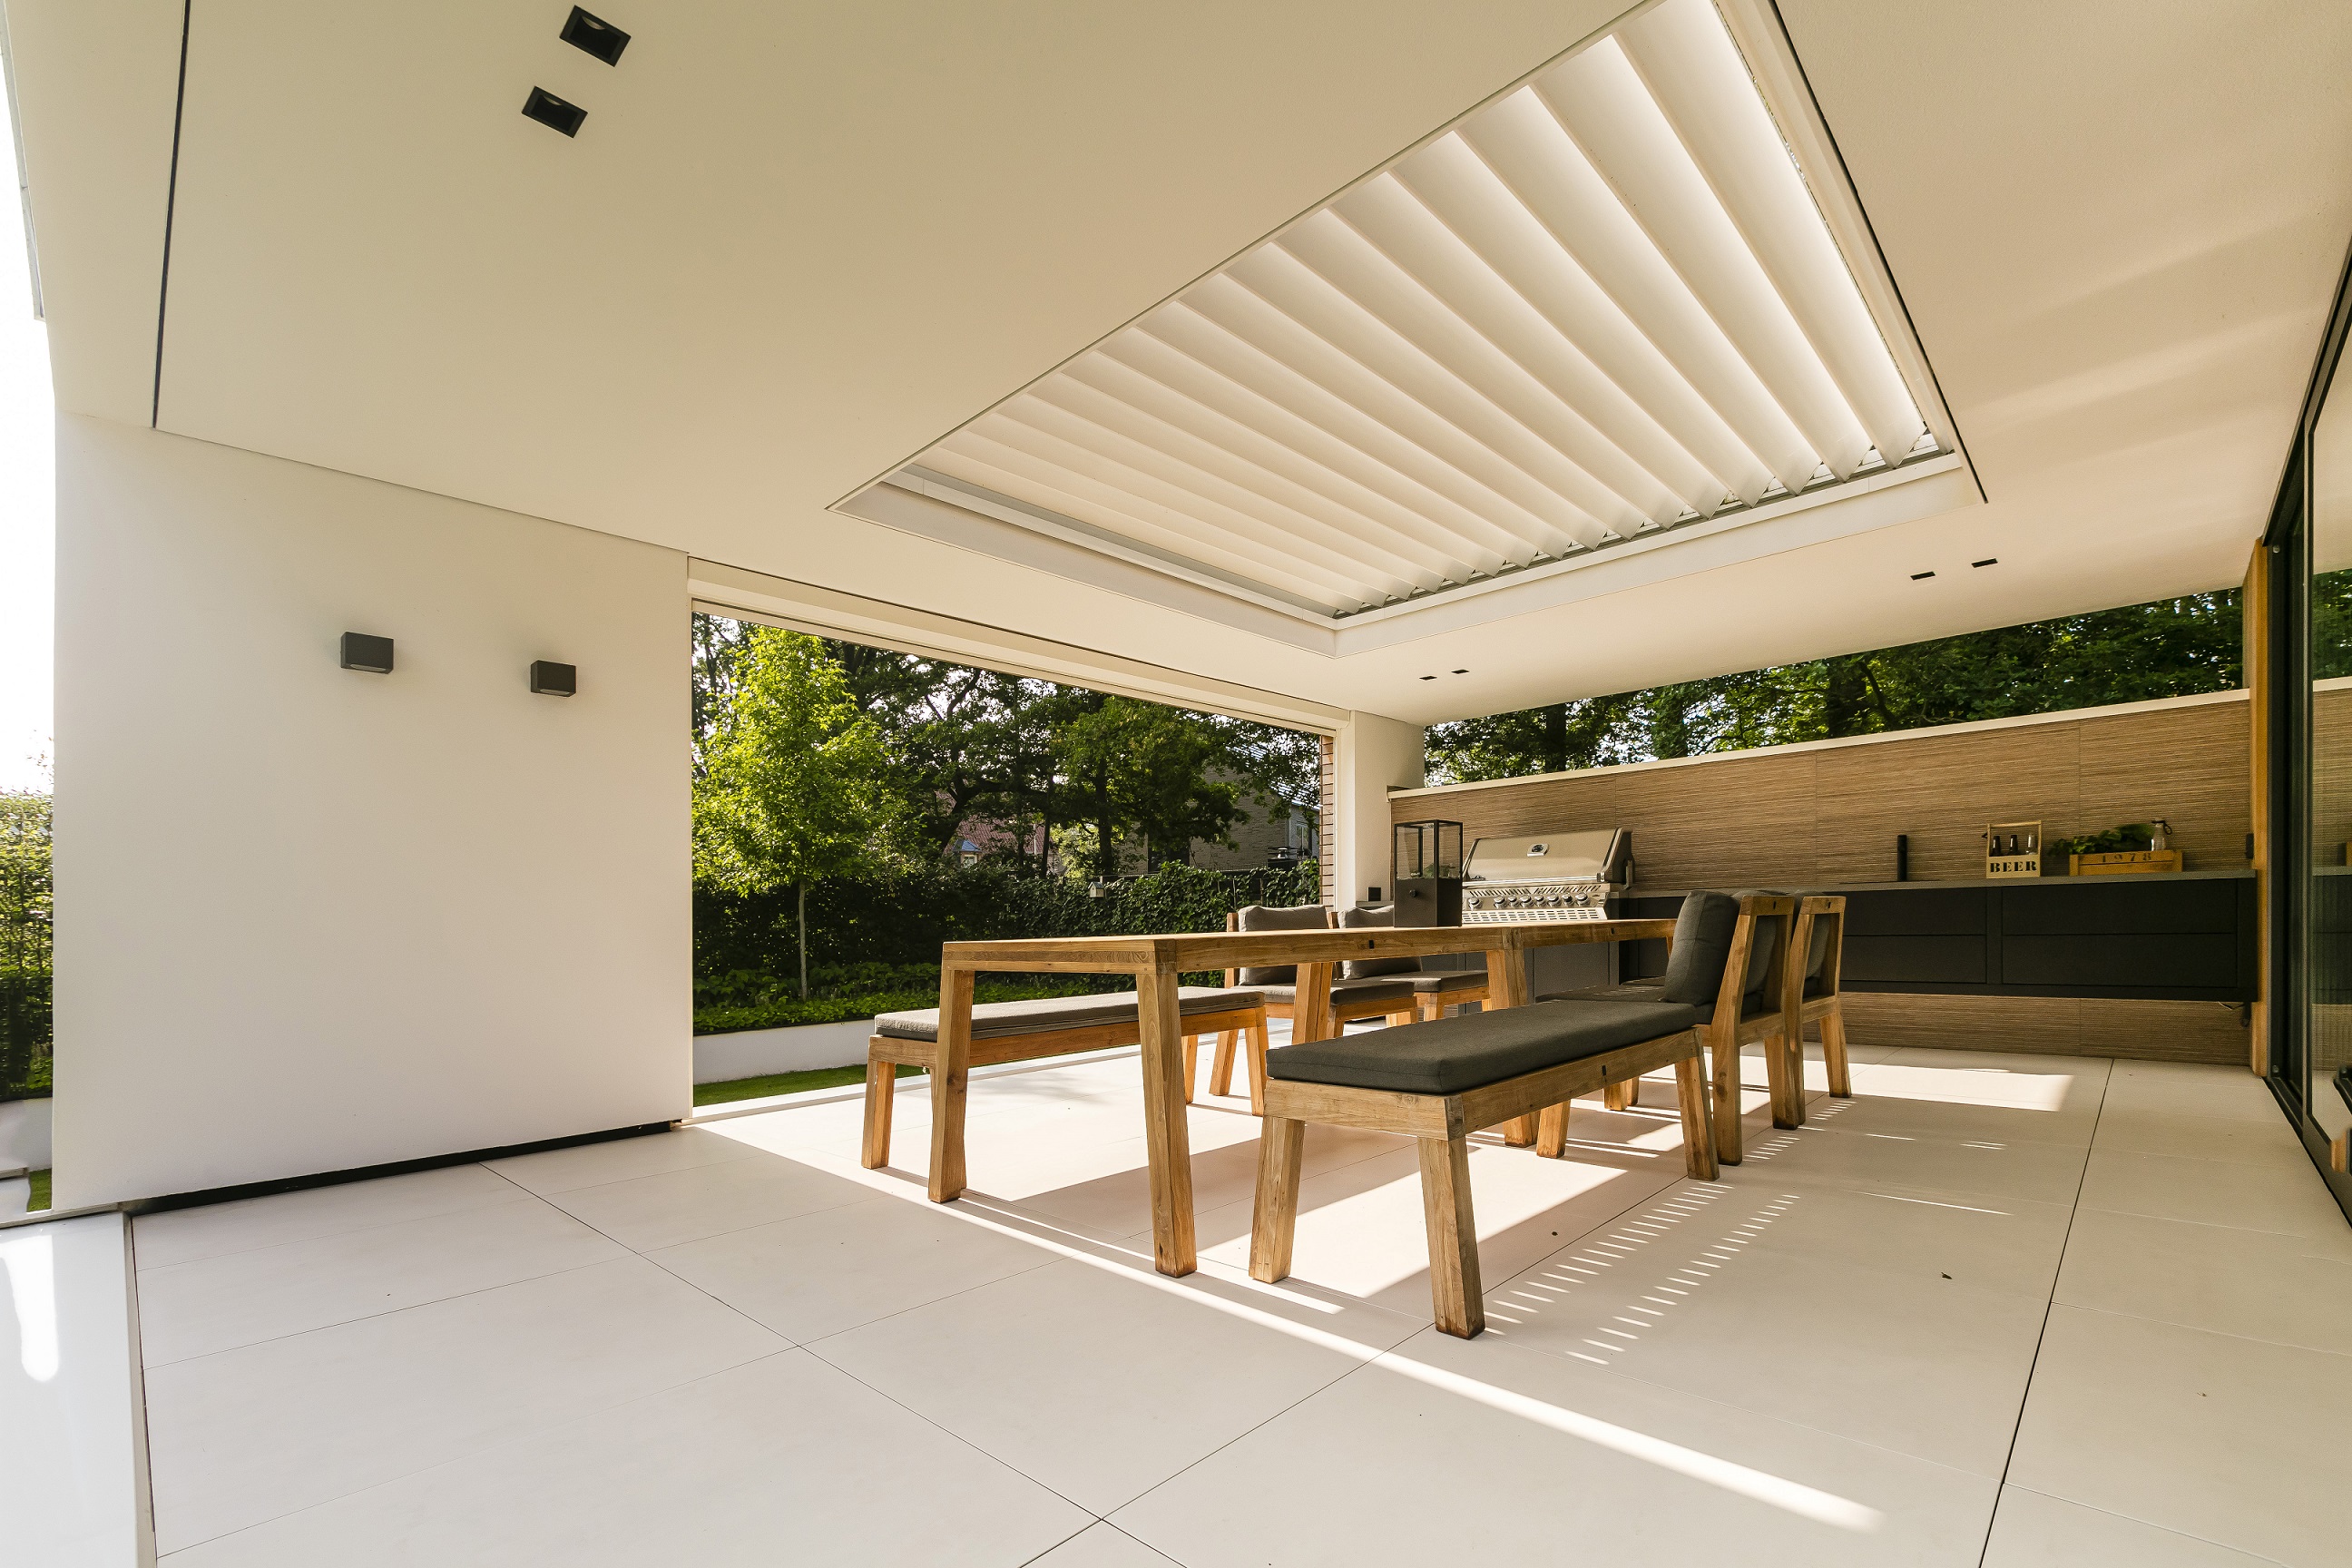 Foto: Villa bouwen   Luxe buitenverblijf met bar en garage   Lichtenberg Exclusieve Villabouw  4 